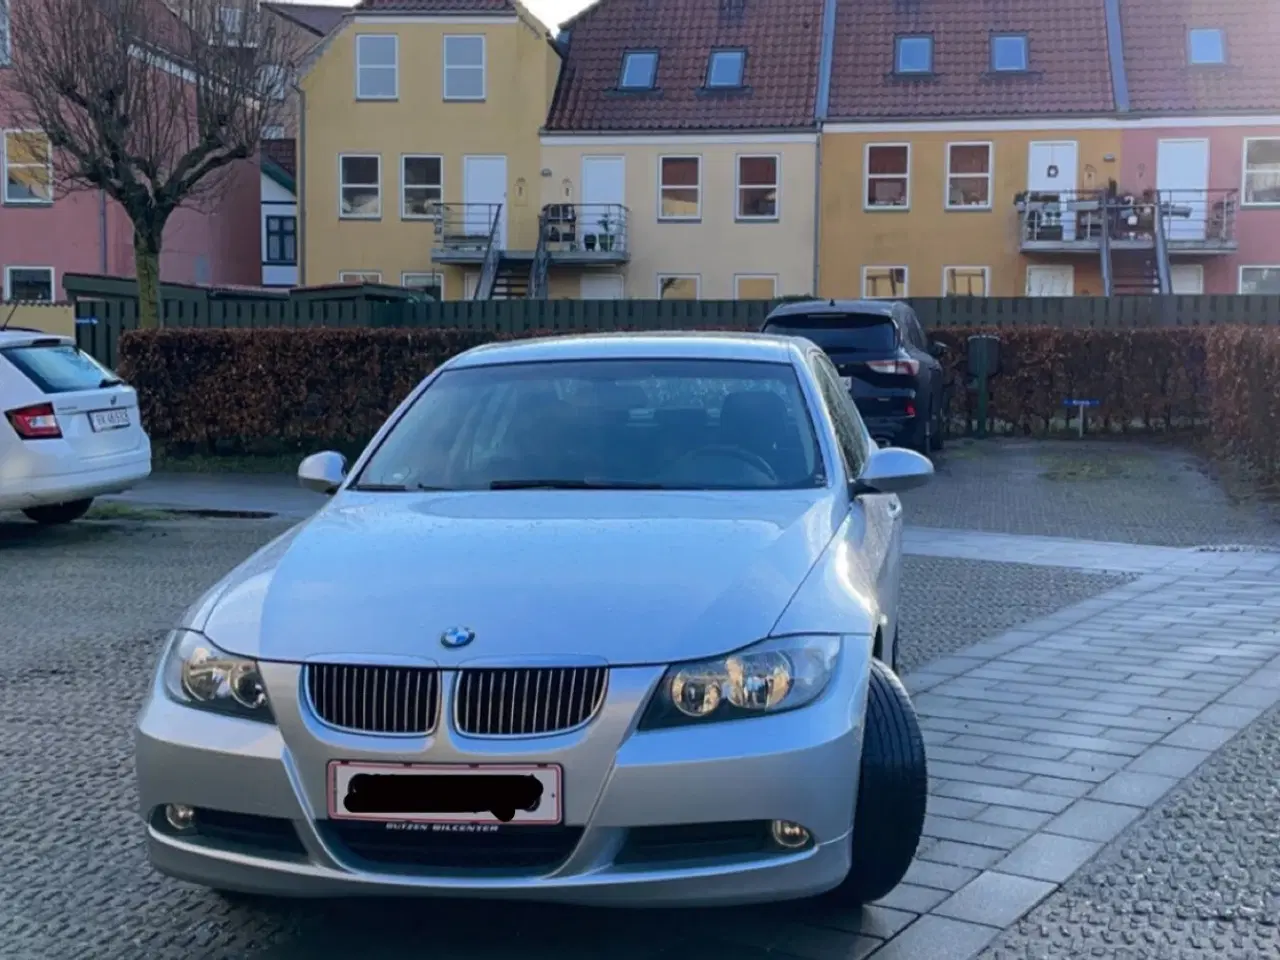 Billede 2 - BMW 318i benzin 2,0 sedan fra 2007